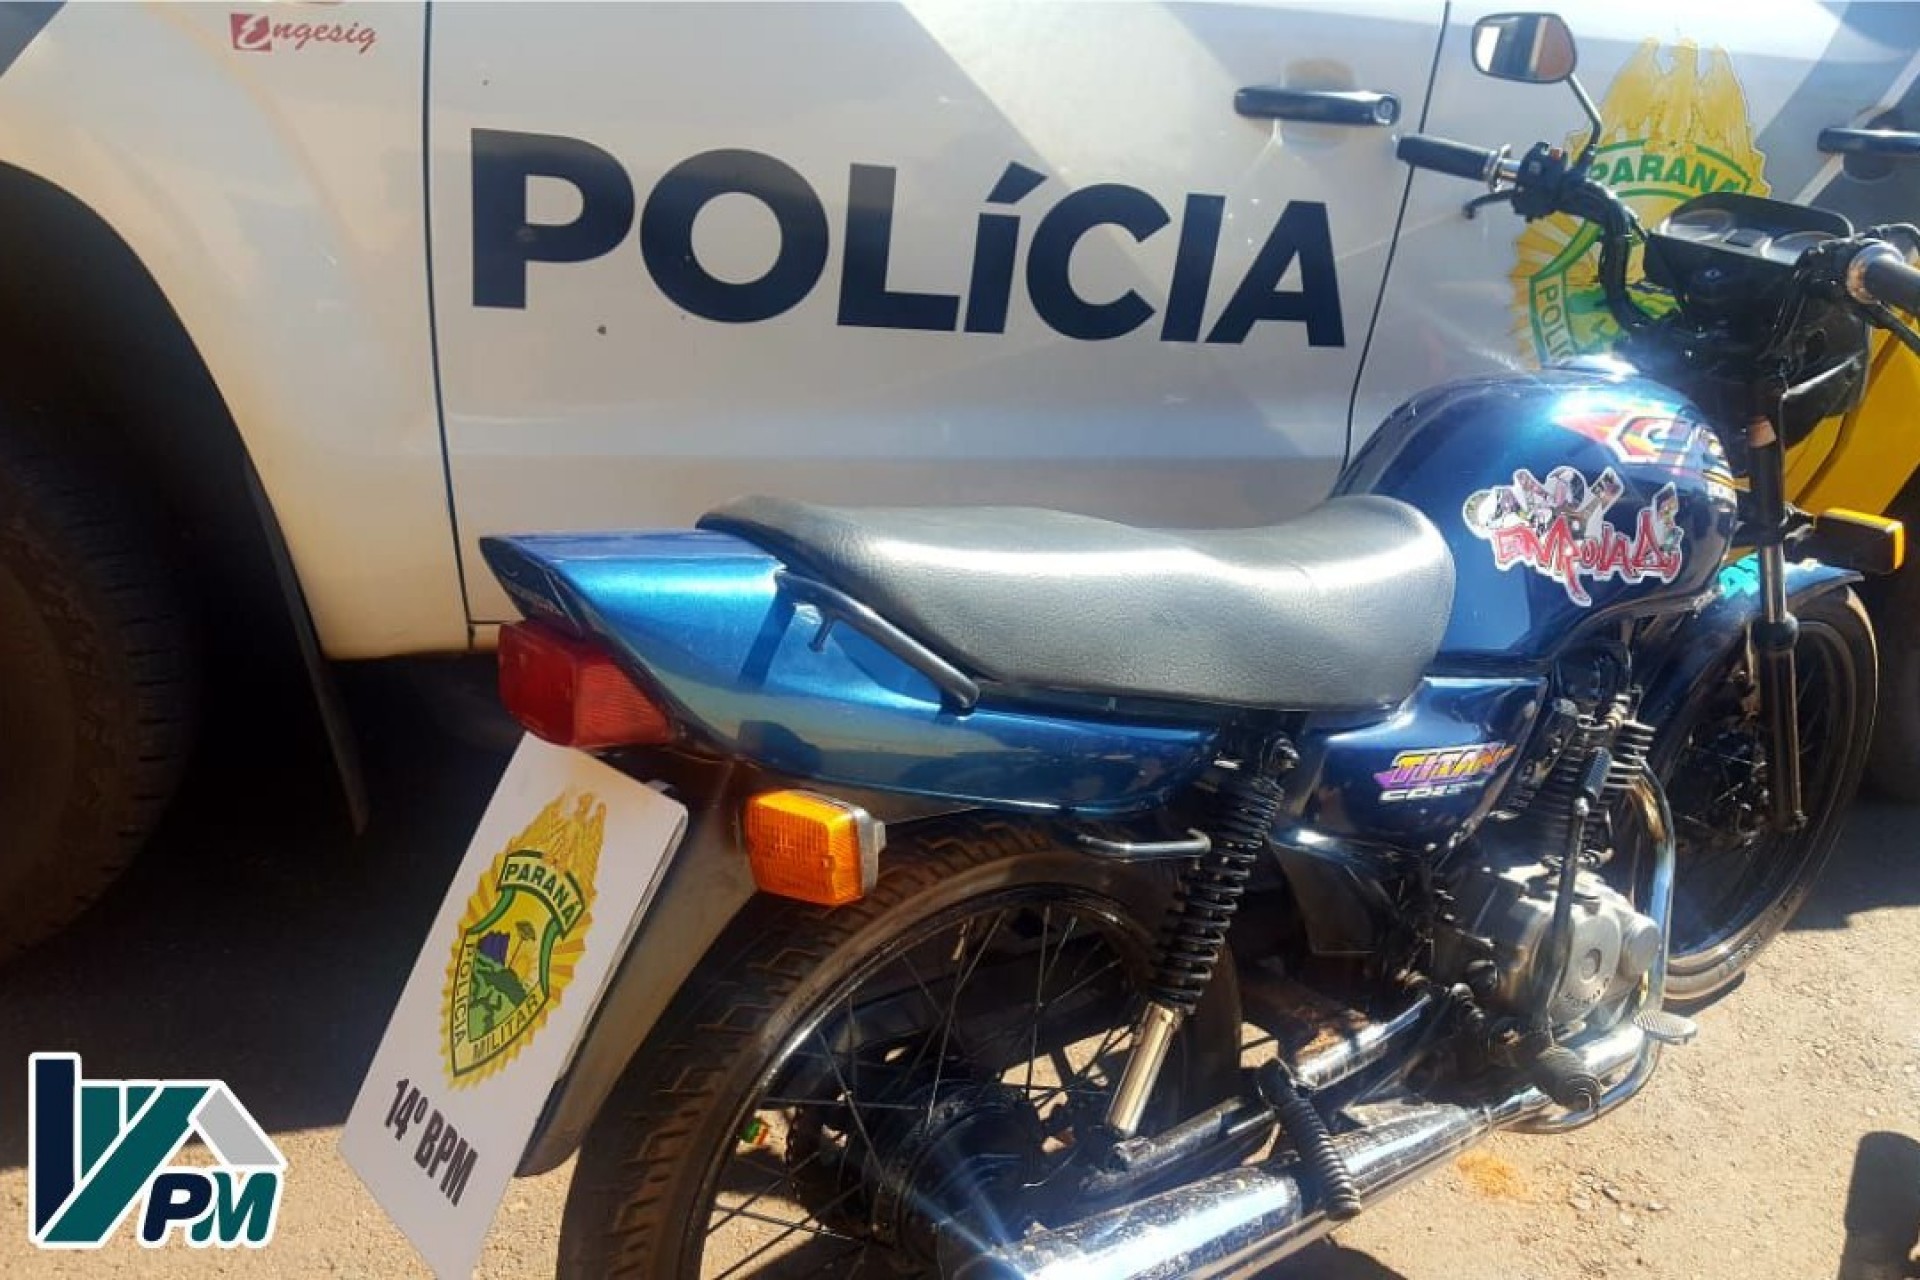 Policia Militar de Missal realizou “Operação Escapamento” e apreendeu três motocicletas